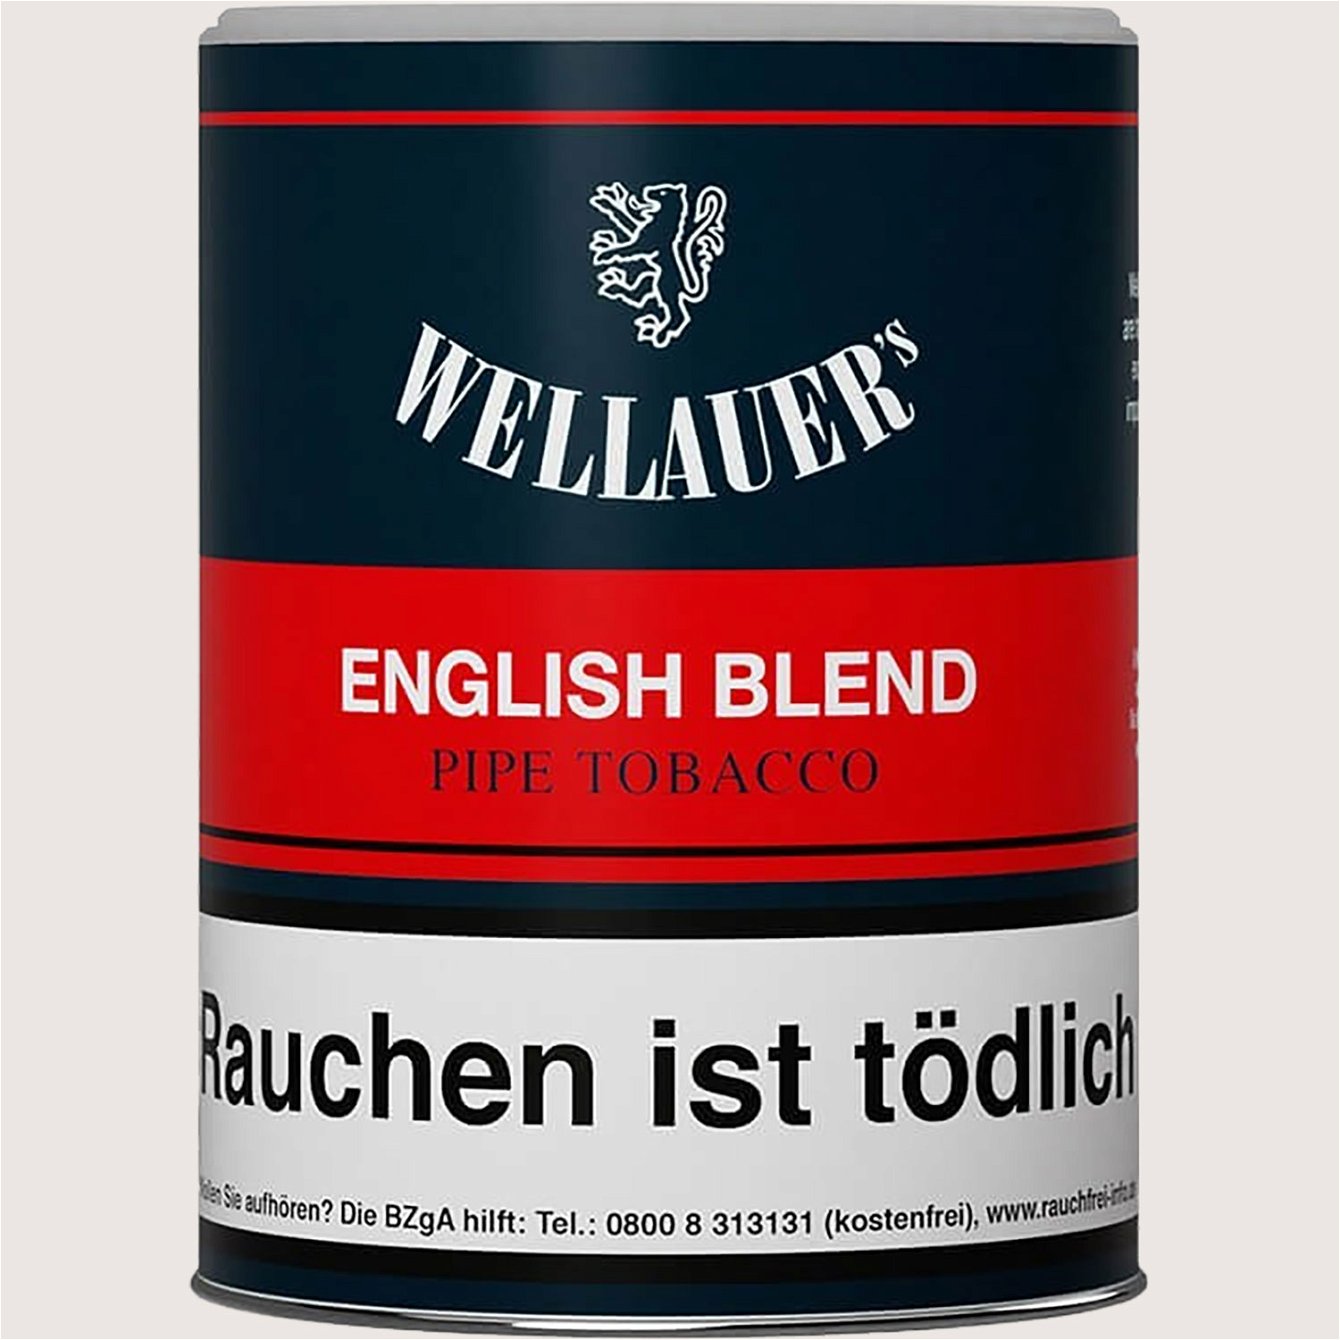 Wellauer's English Blend 180 g